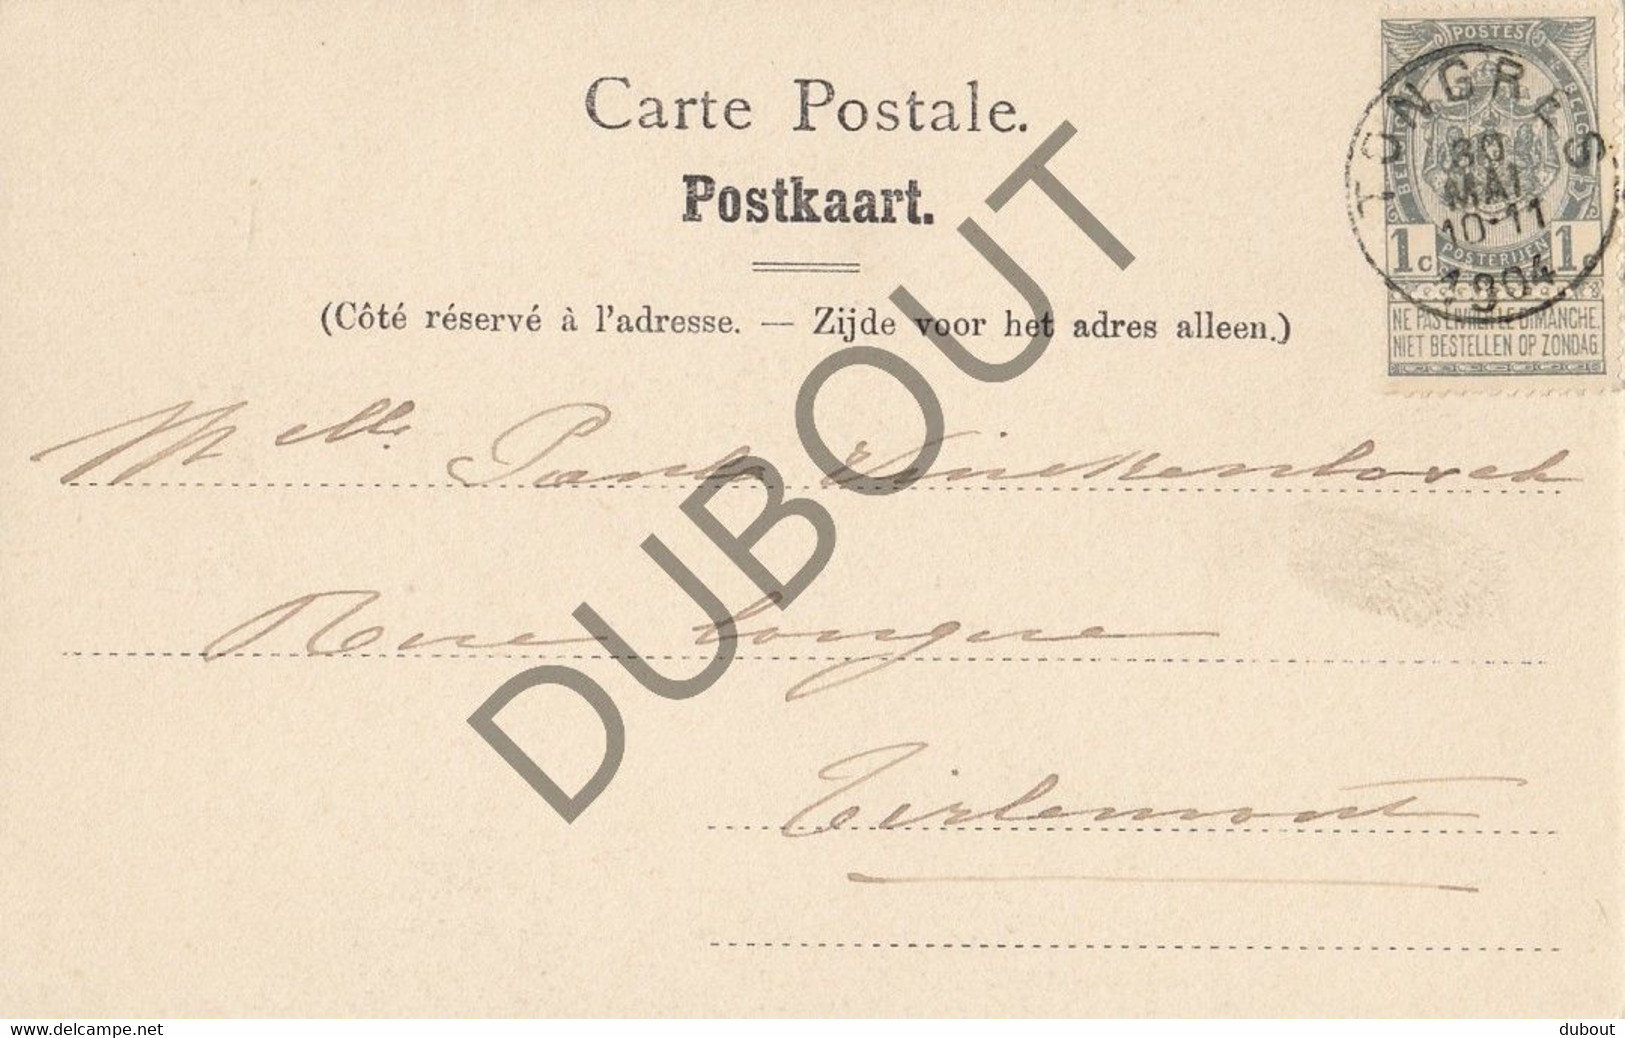 Postkaarte/Carte Postale - Tongres -  Notre Dame (C2700) - Tongeren